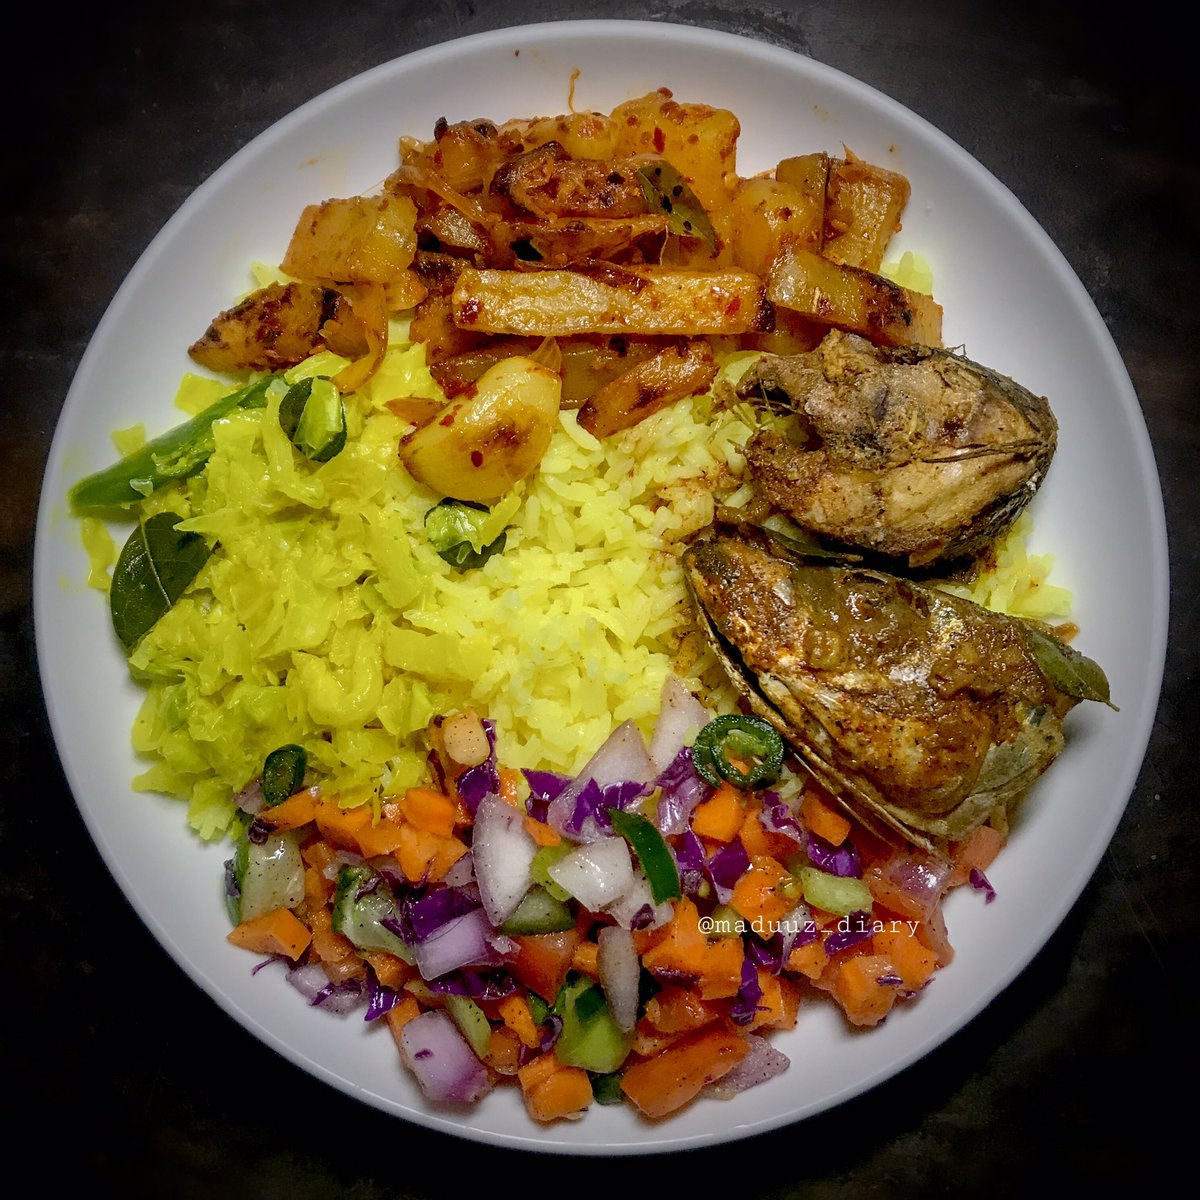 🔅බාස්මතී කහ බත් 🔅මාළු 🔅අල තෙල් දාලා 🔅ගෝවා කිරට 🔅සලාද (ලූණු, කැරට්, කොළ පිපිඤ්ඤා, තක්කාලි, මාළු මිරිස්, අමුමිරිස්) #food #foodies #foods #foodie #foodlover #foodlove #foodblog #foodblogger #foodphotography #lunchideas #lunchtime #riceandcurry #yellowrice #SriLanka